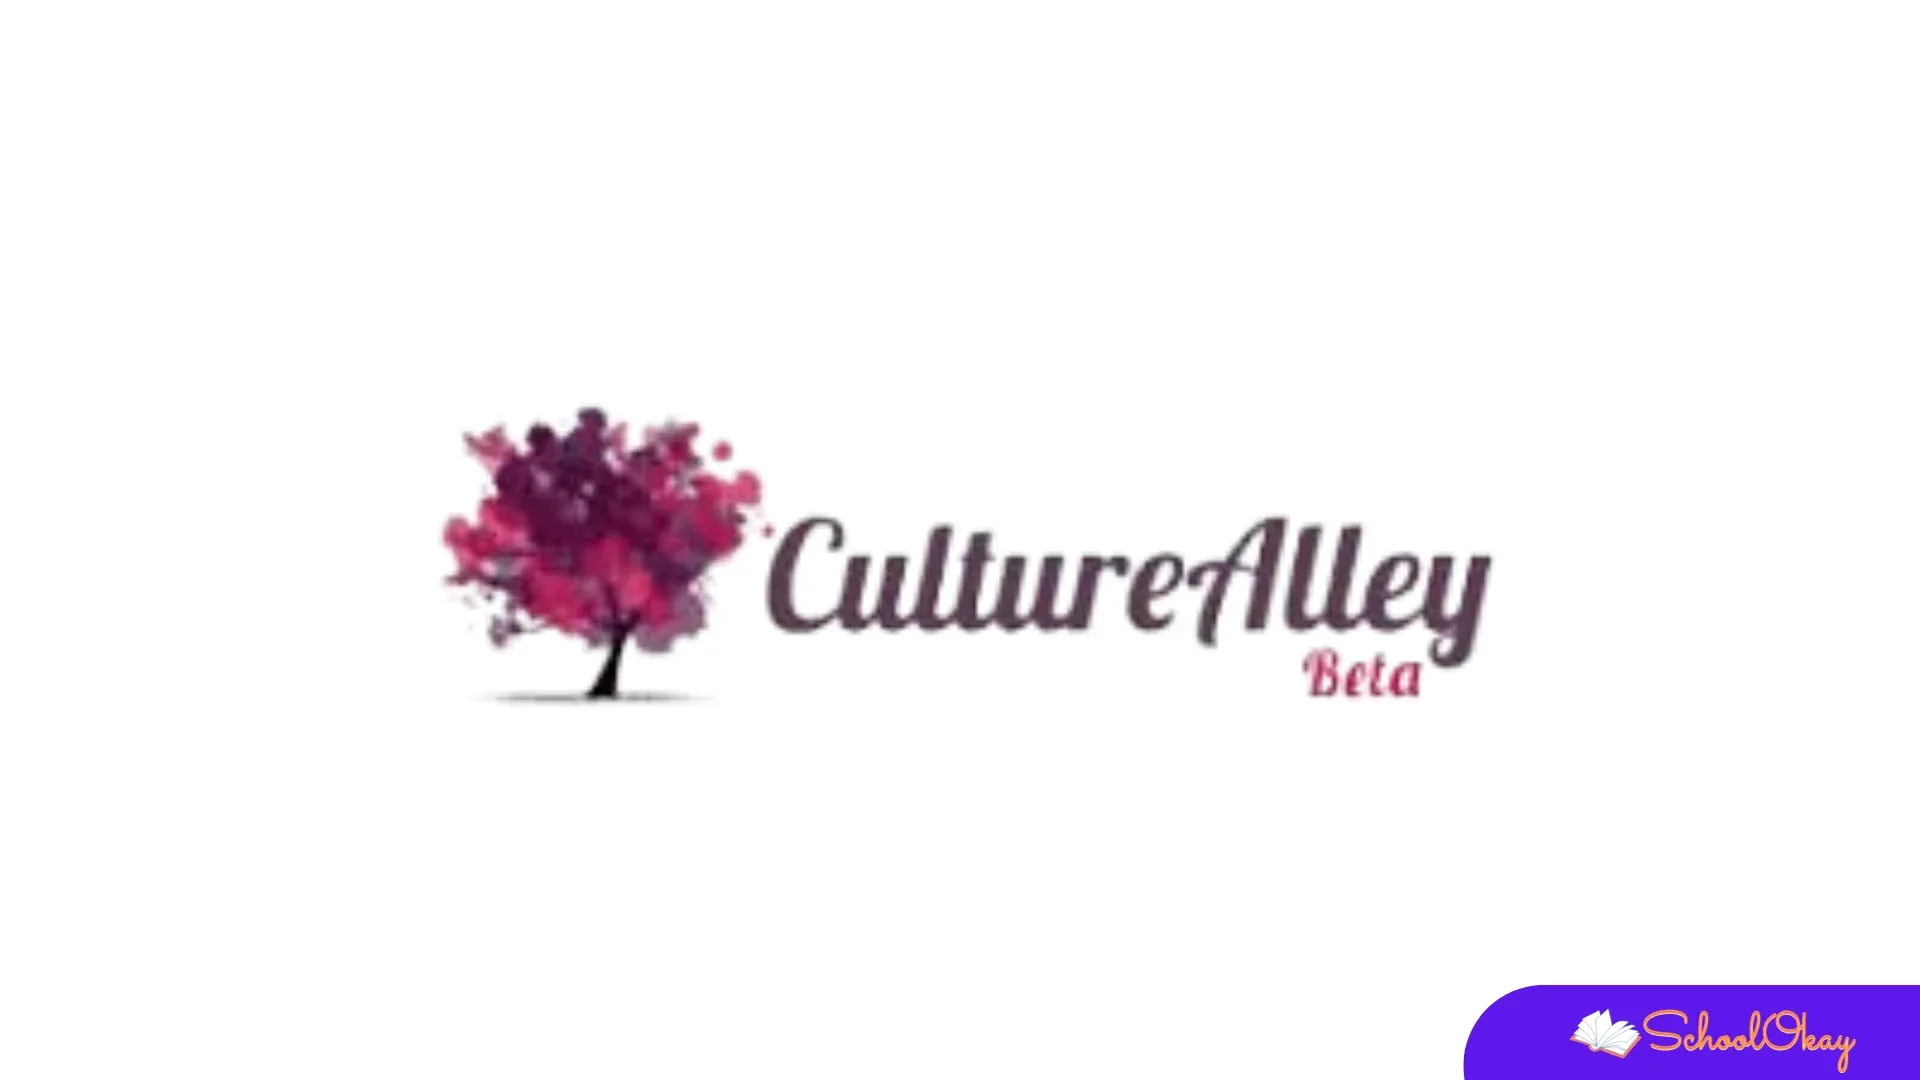 Culturealley